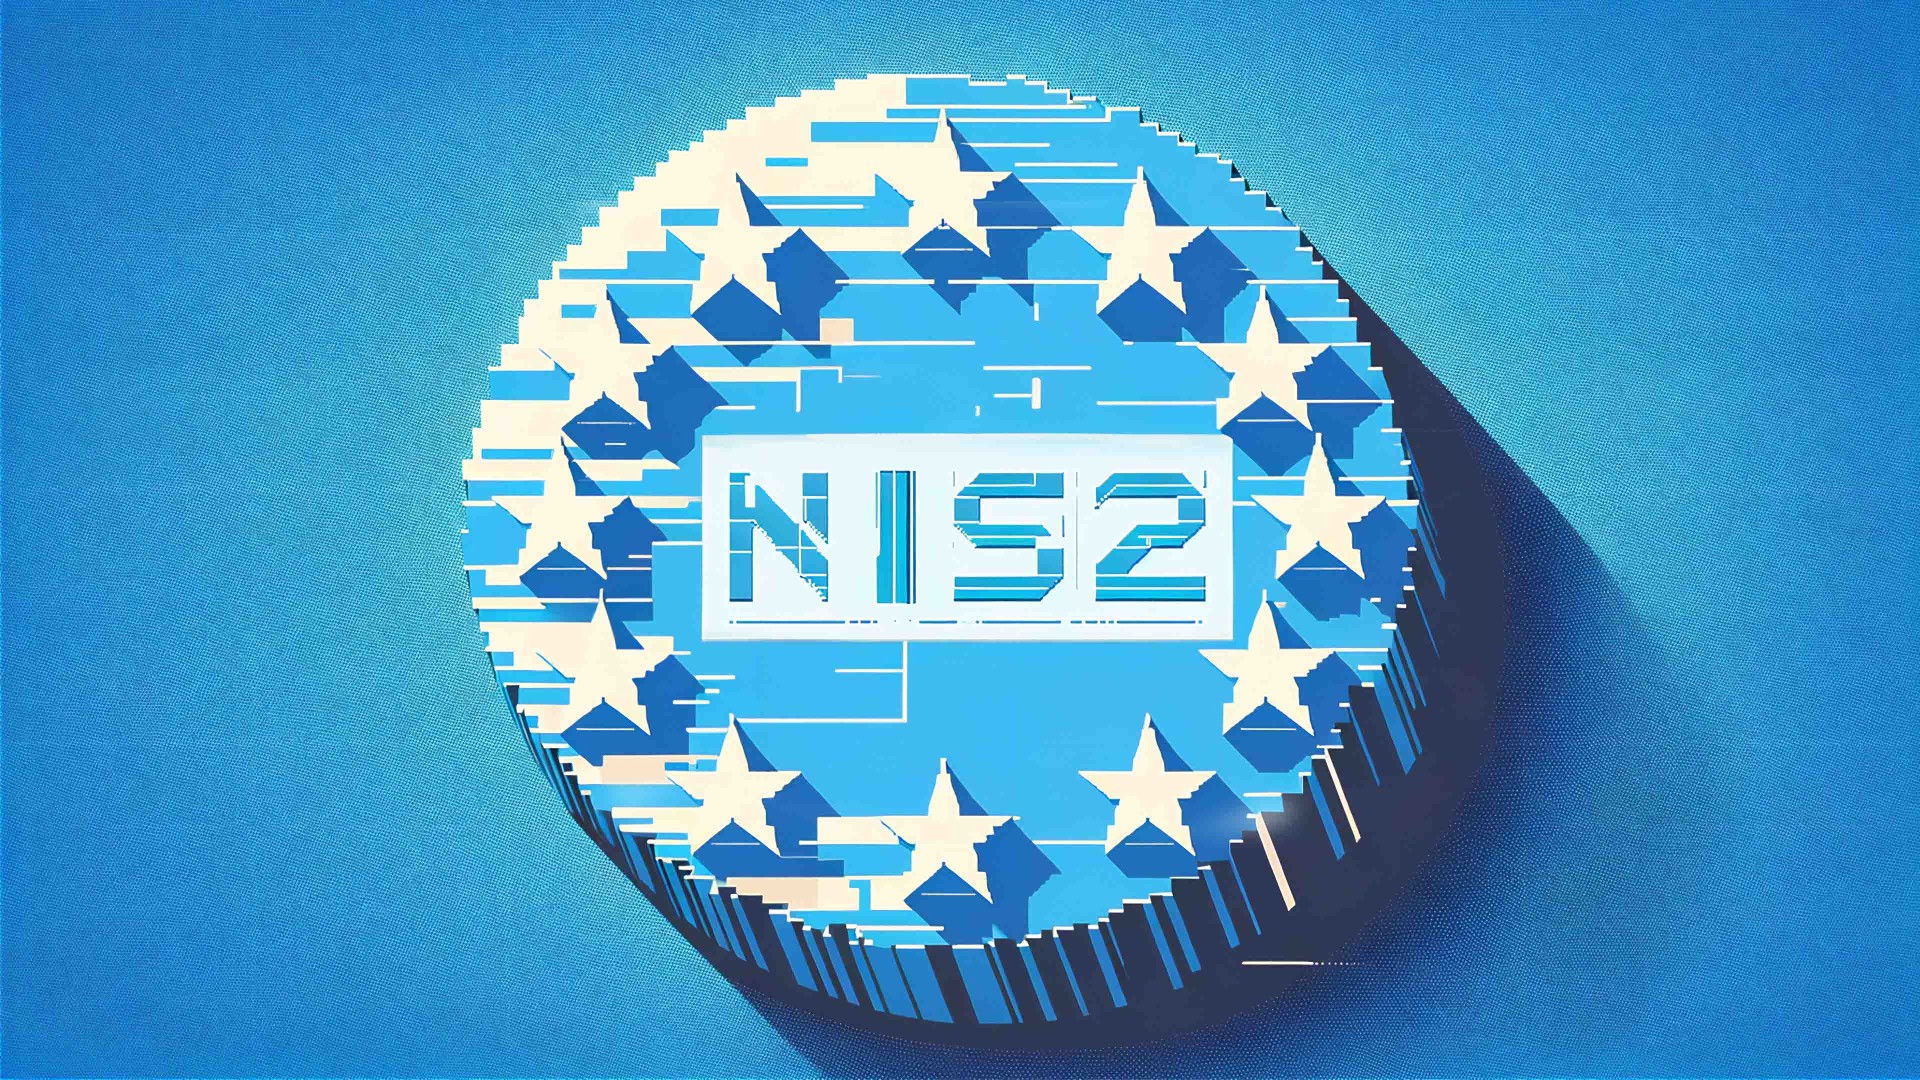 NIS2 - Netzwerksicherheit und Informations-sicherheit